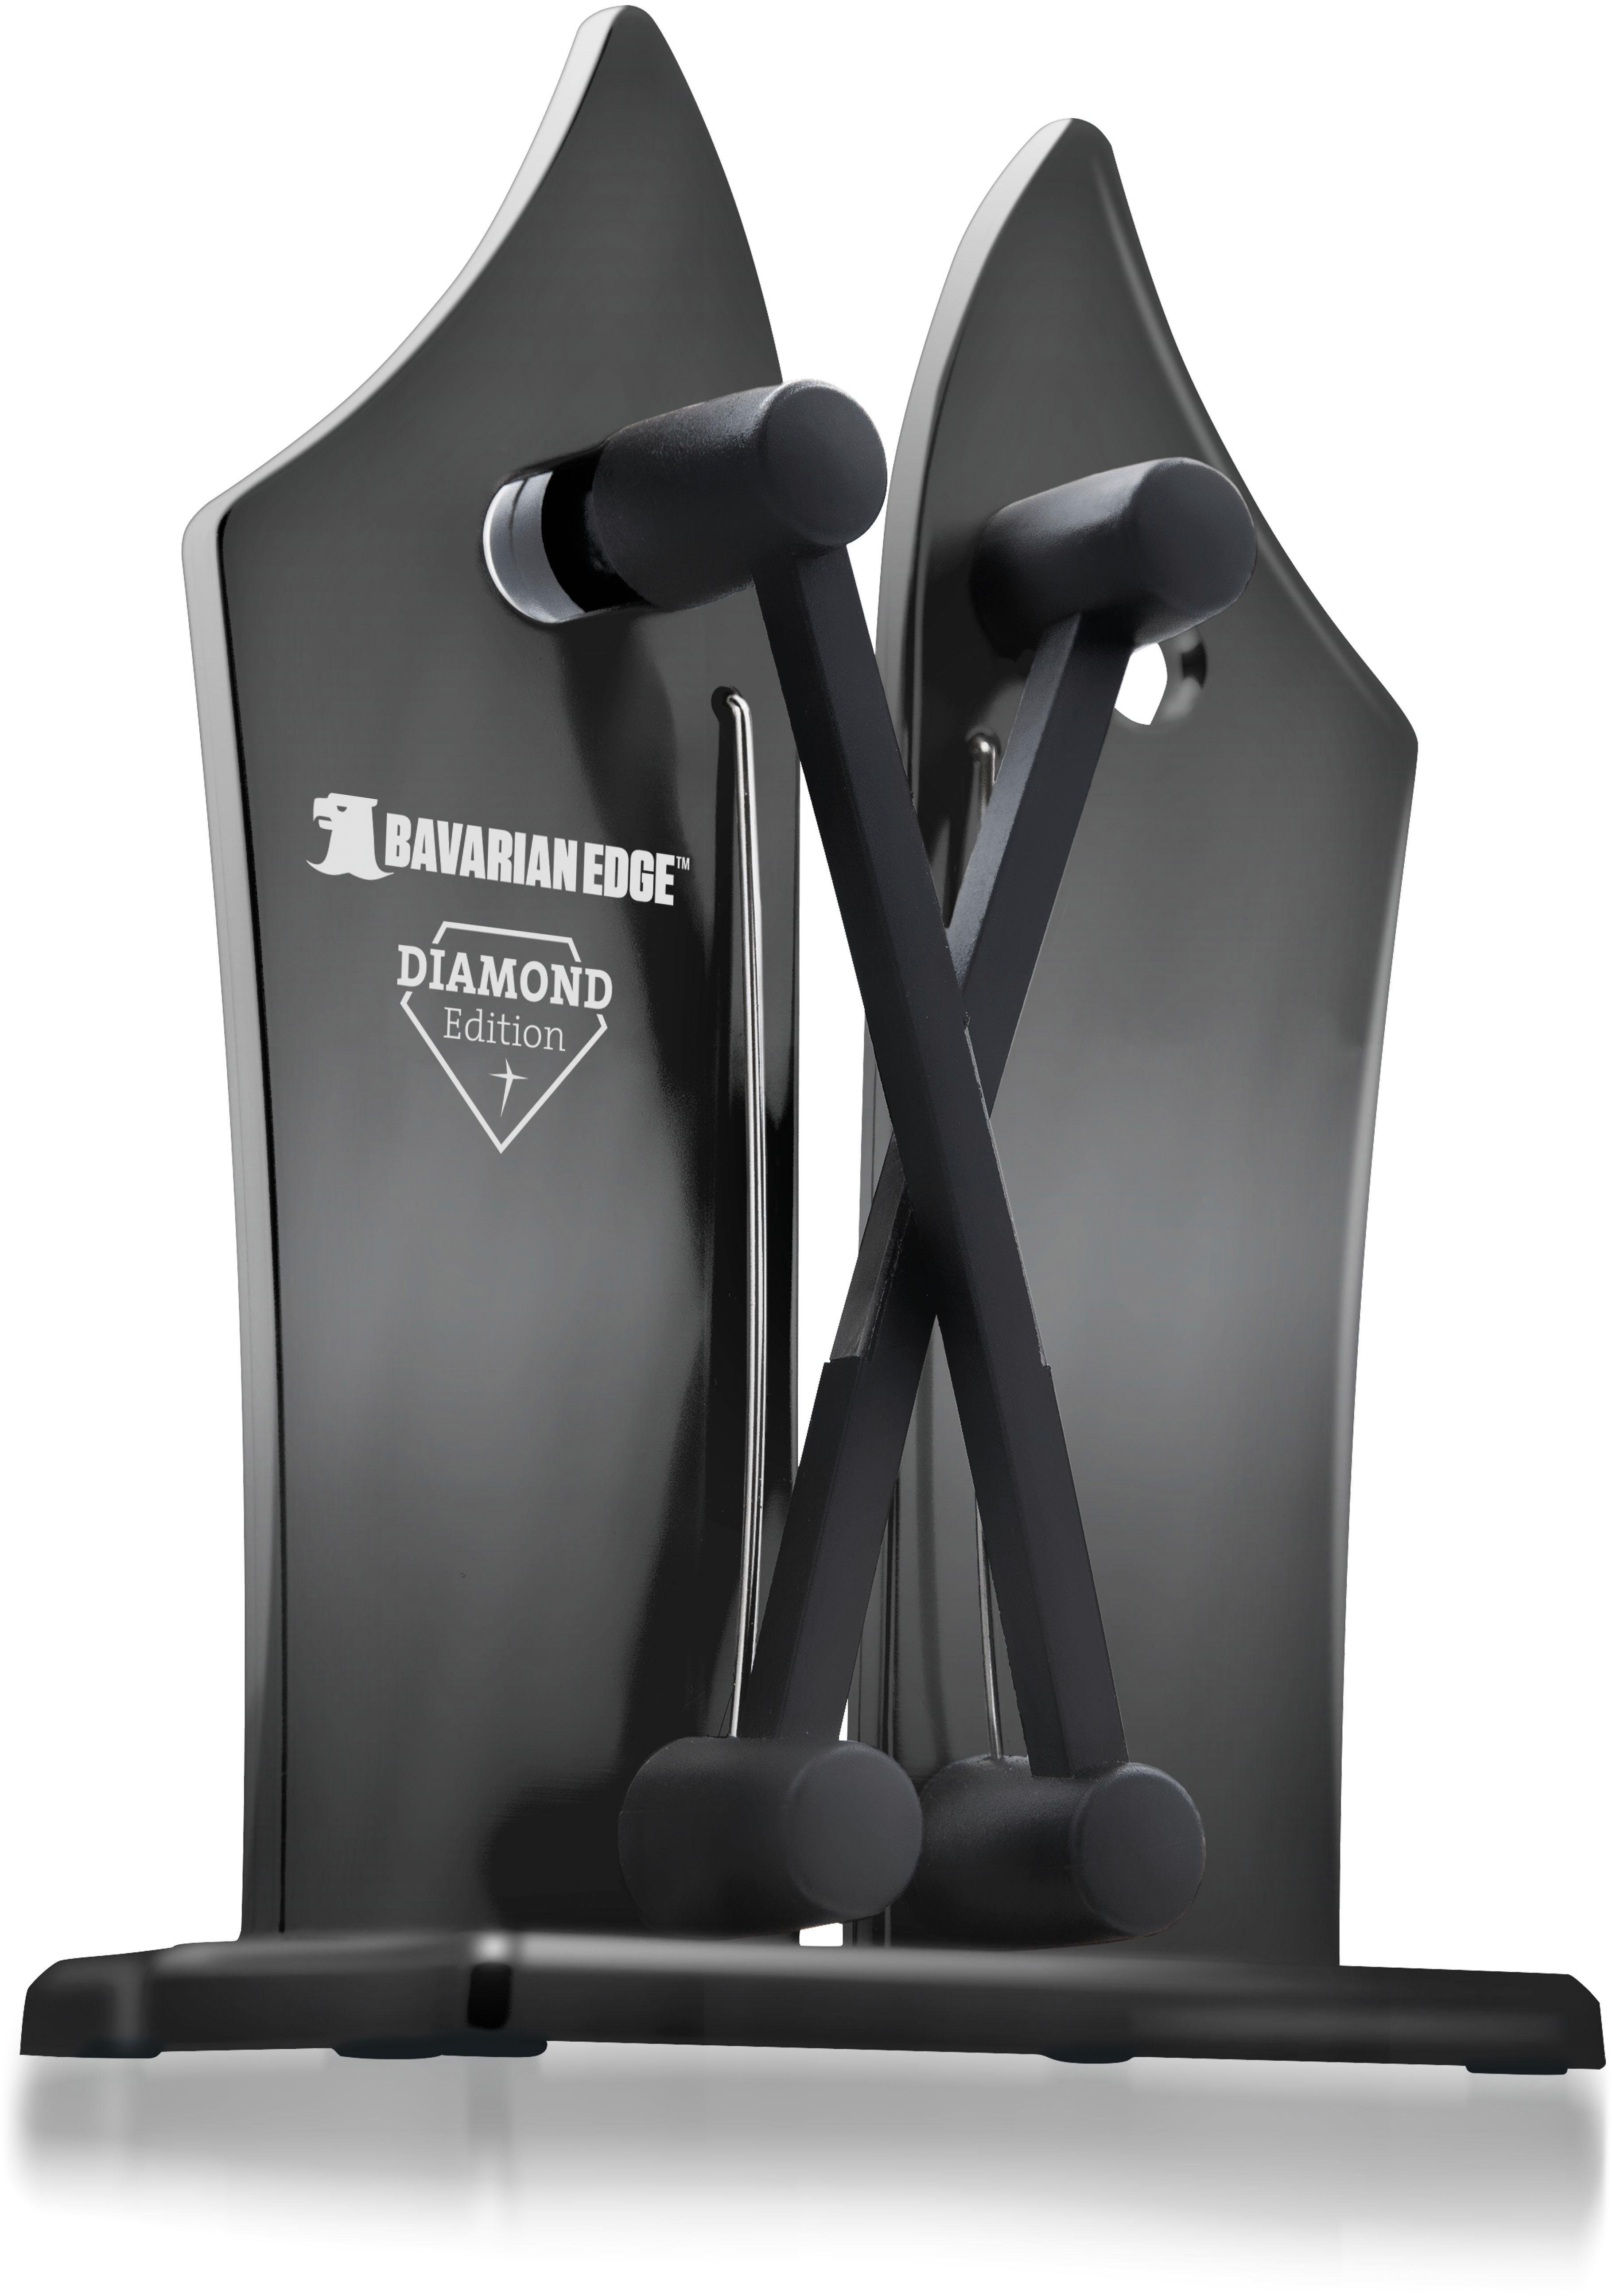 MediaShop Messerschärfer »Bavarian Edge Diamond Edition«, X-Cross-Technologie  online kaufen | OTTO